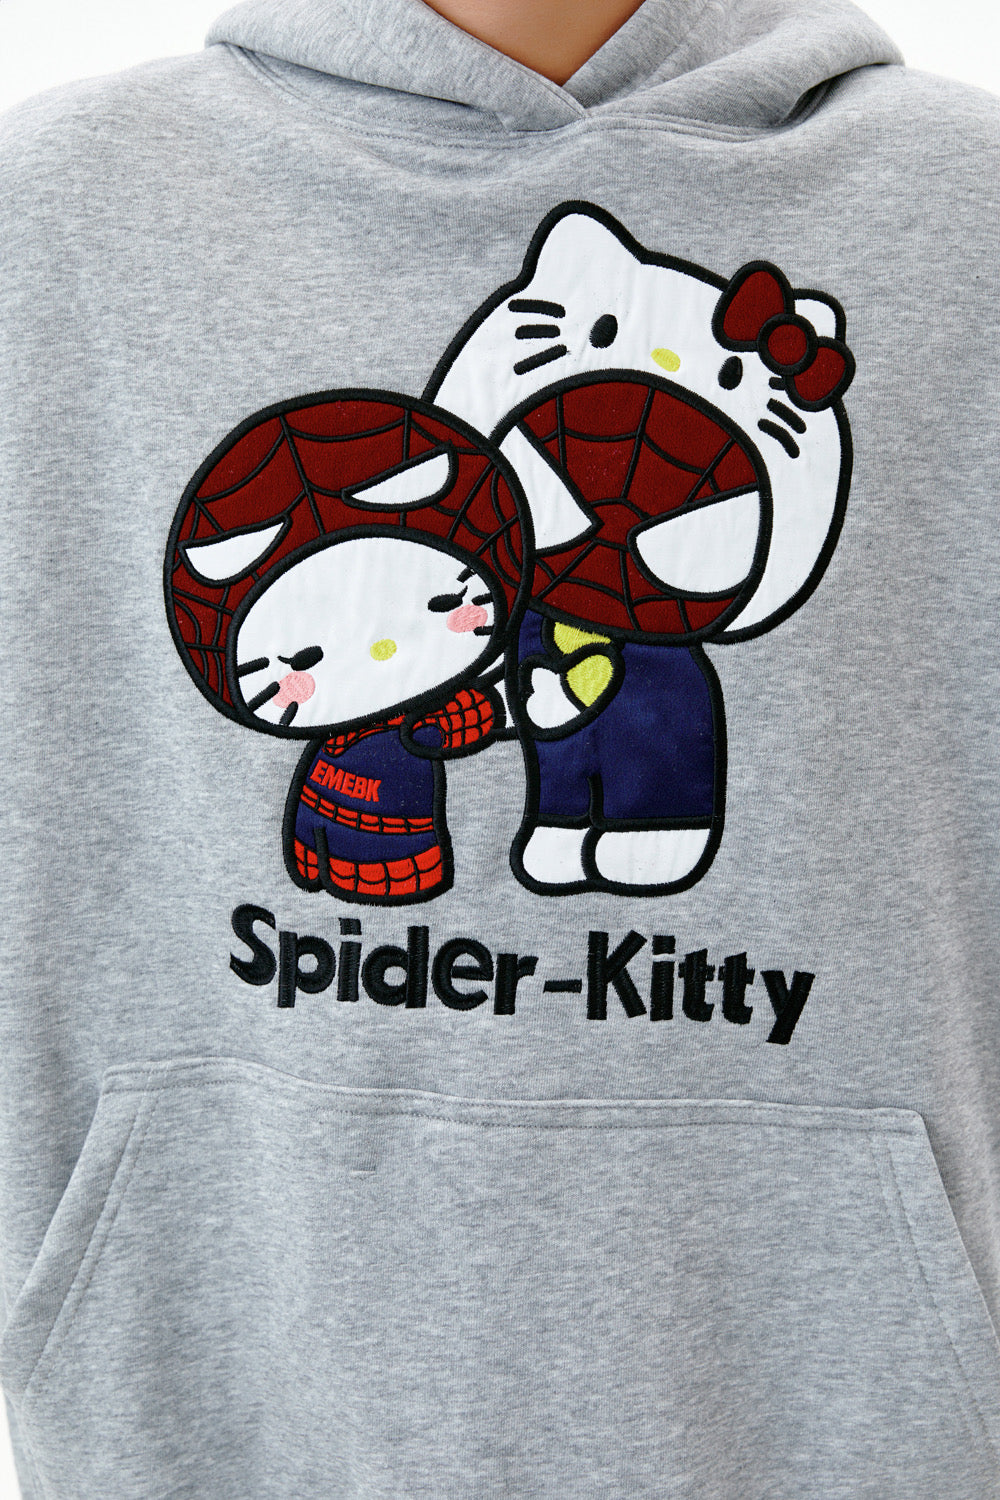 Hellokitty x Spiderman Hoodie Kawaii Pullover Cute Hooded Sweatshirt